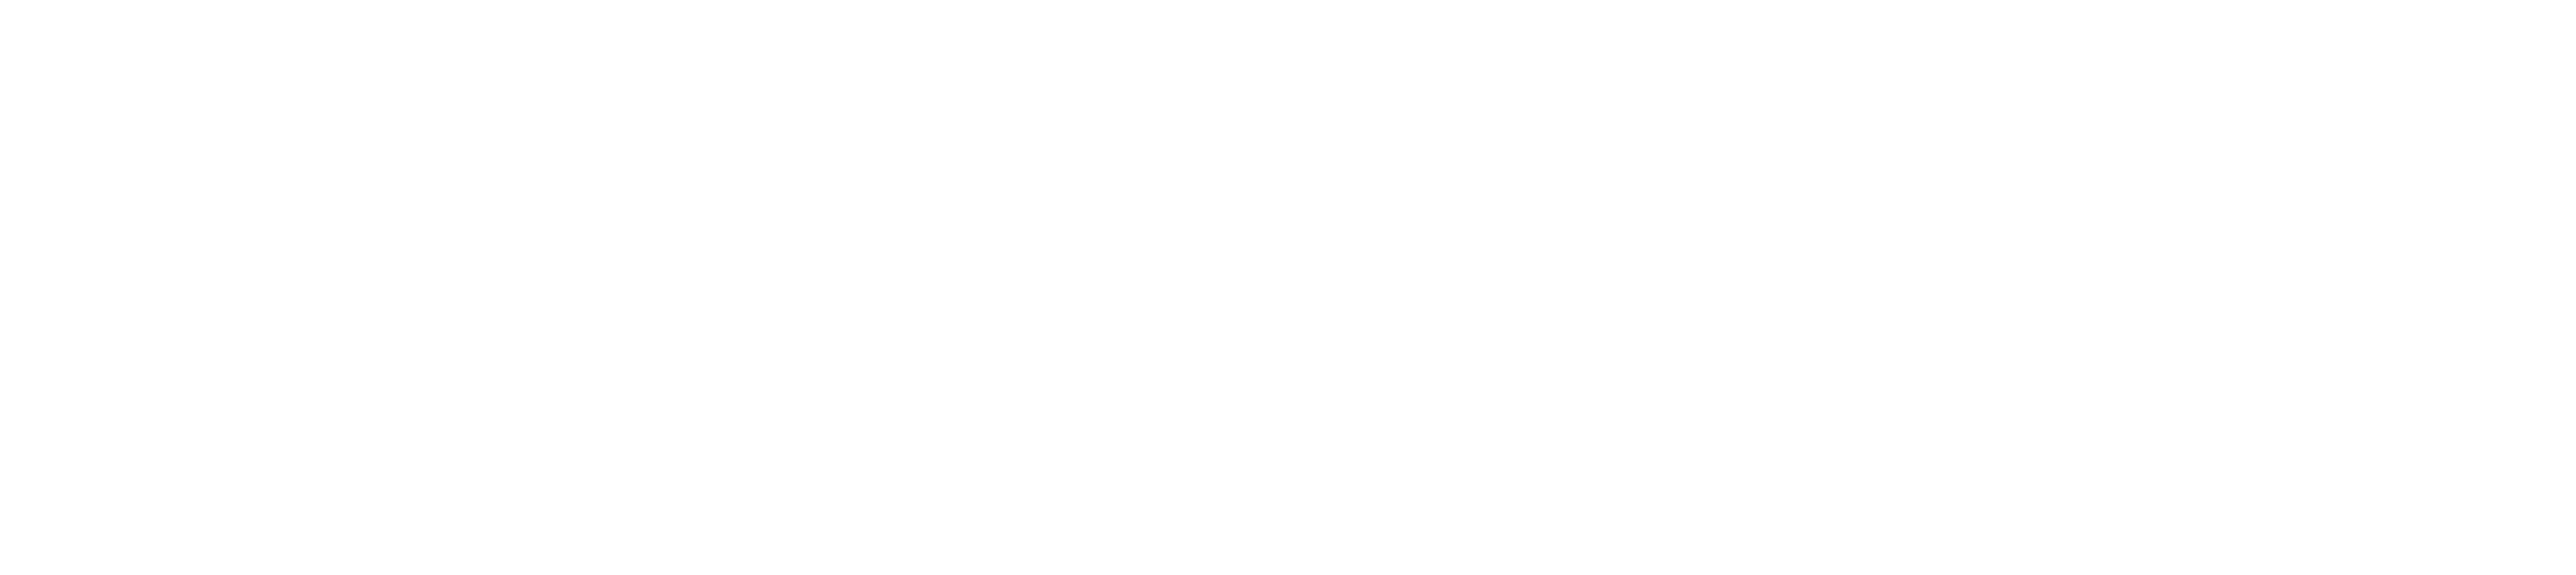 eu co-funded